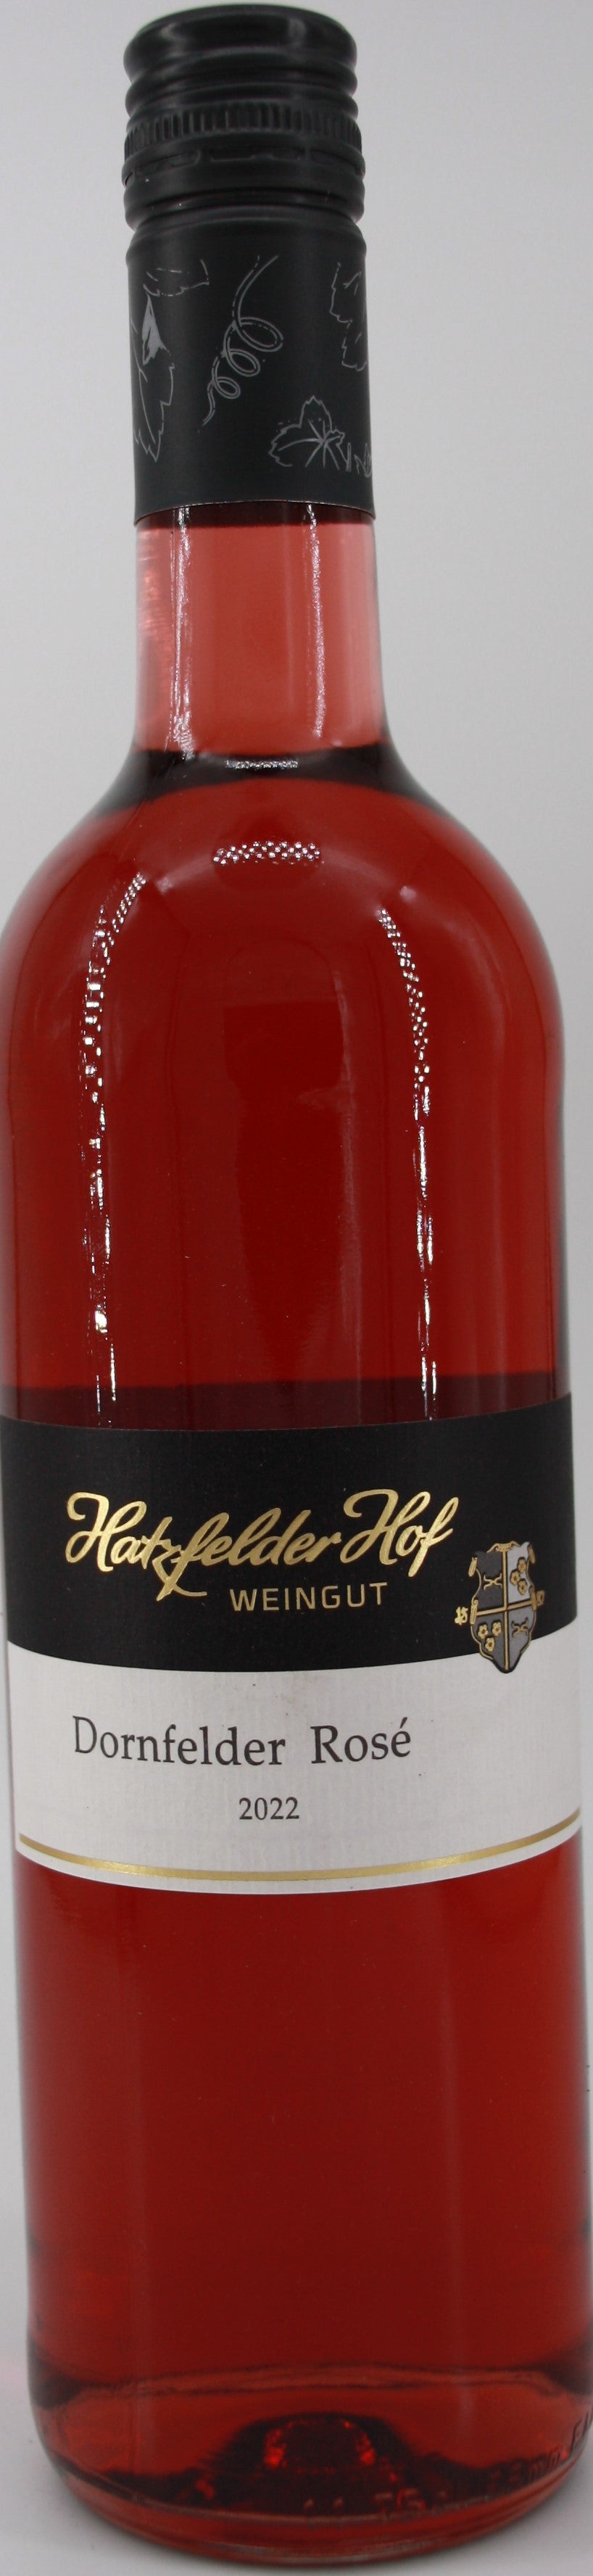 2022 Dornfelder Rosé - lieblich – Weingut Obenauer Shop